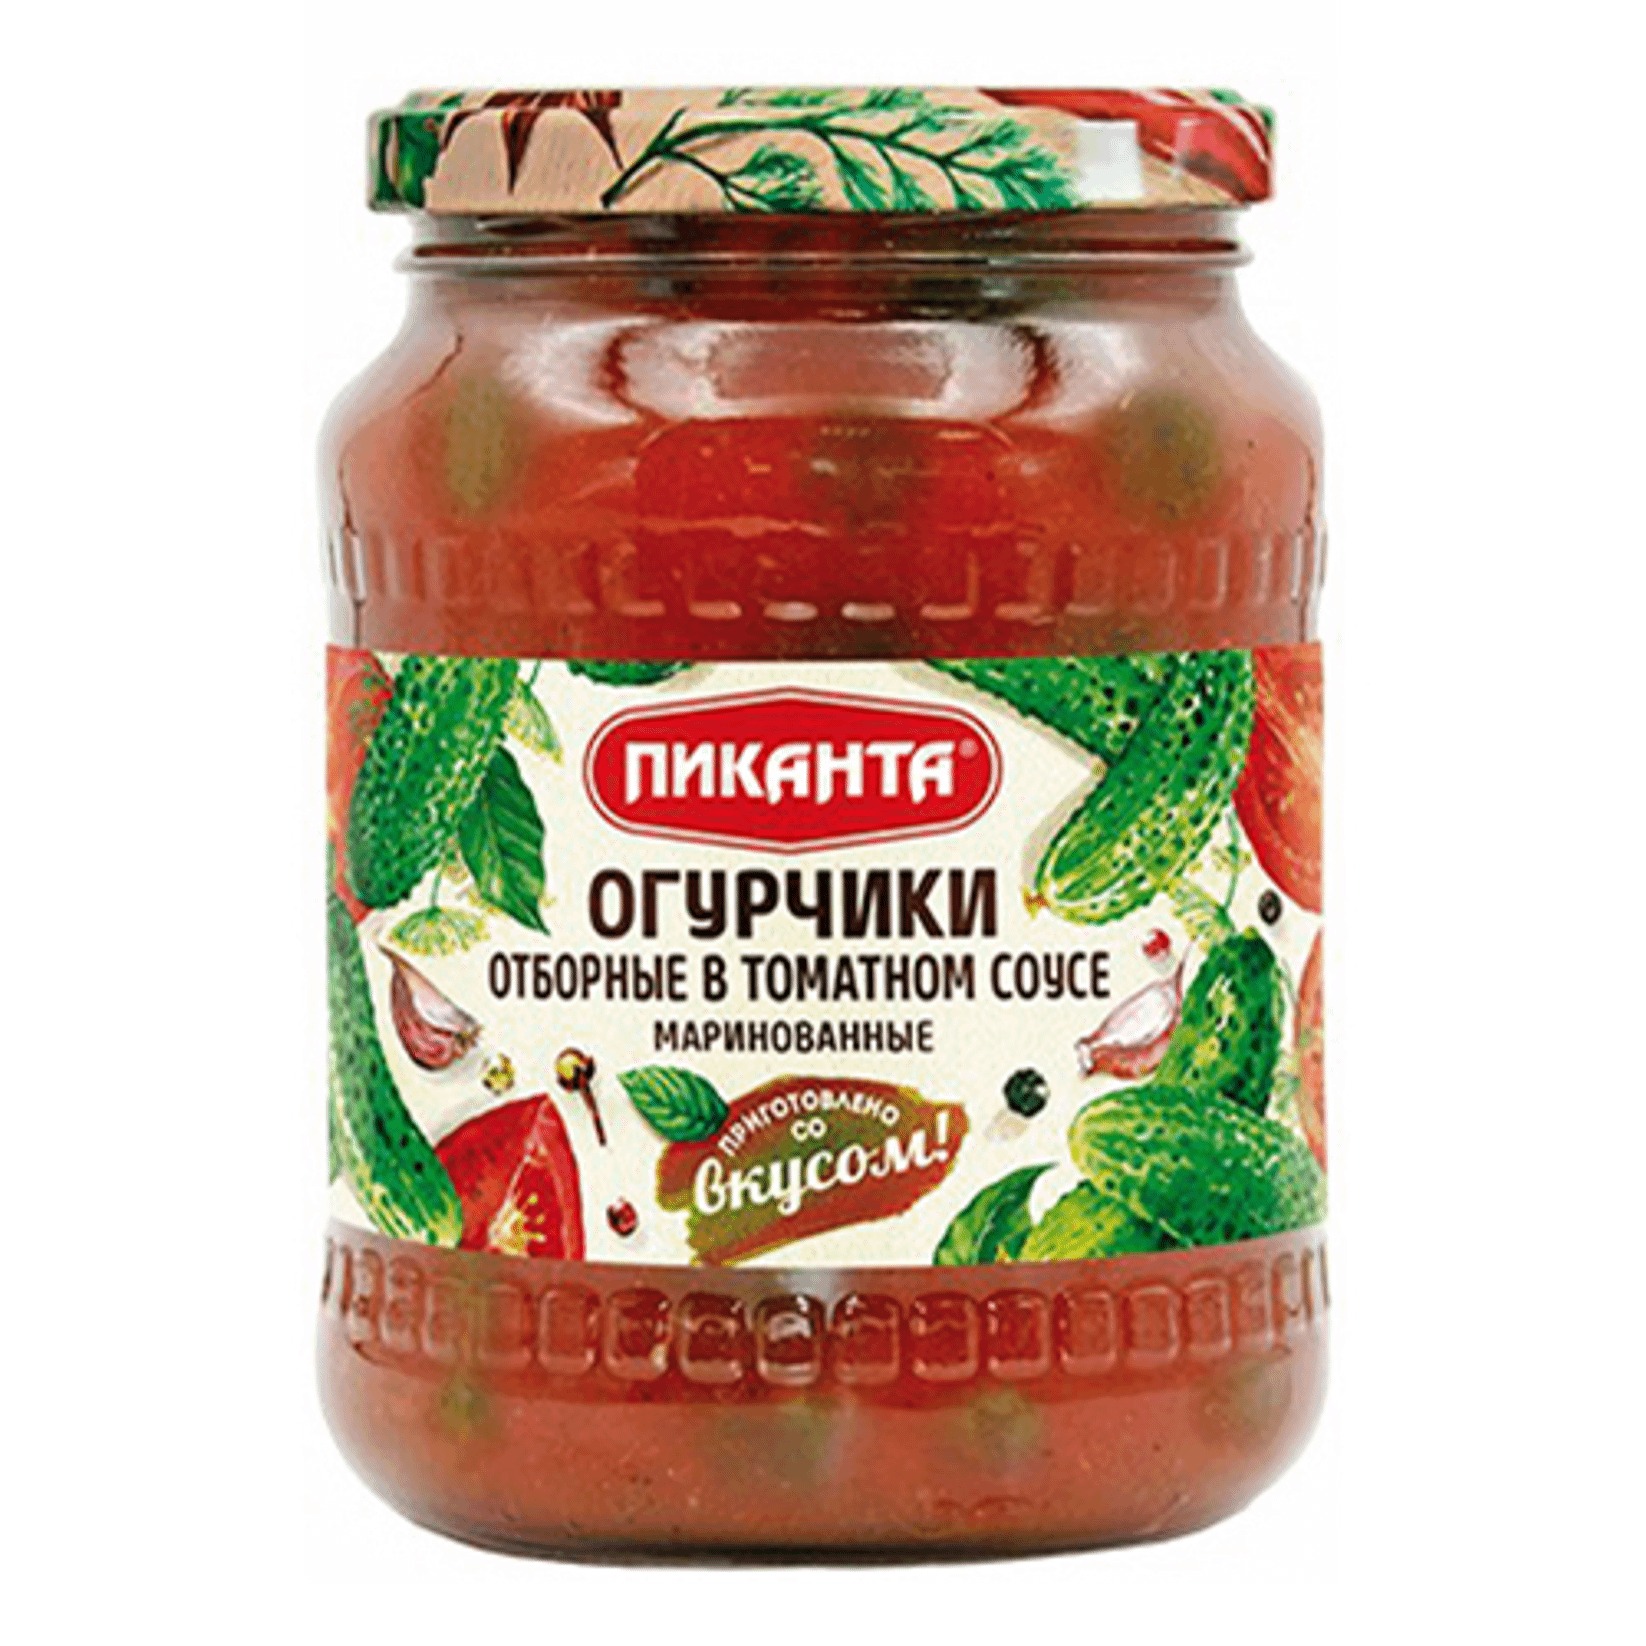 Огурчики Пиканта маринованные в томатном соусе, 700 г килька балтийская знаток прод в томатном соусе 240 г